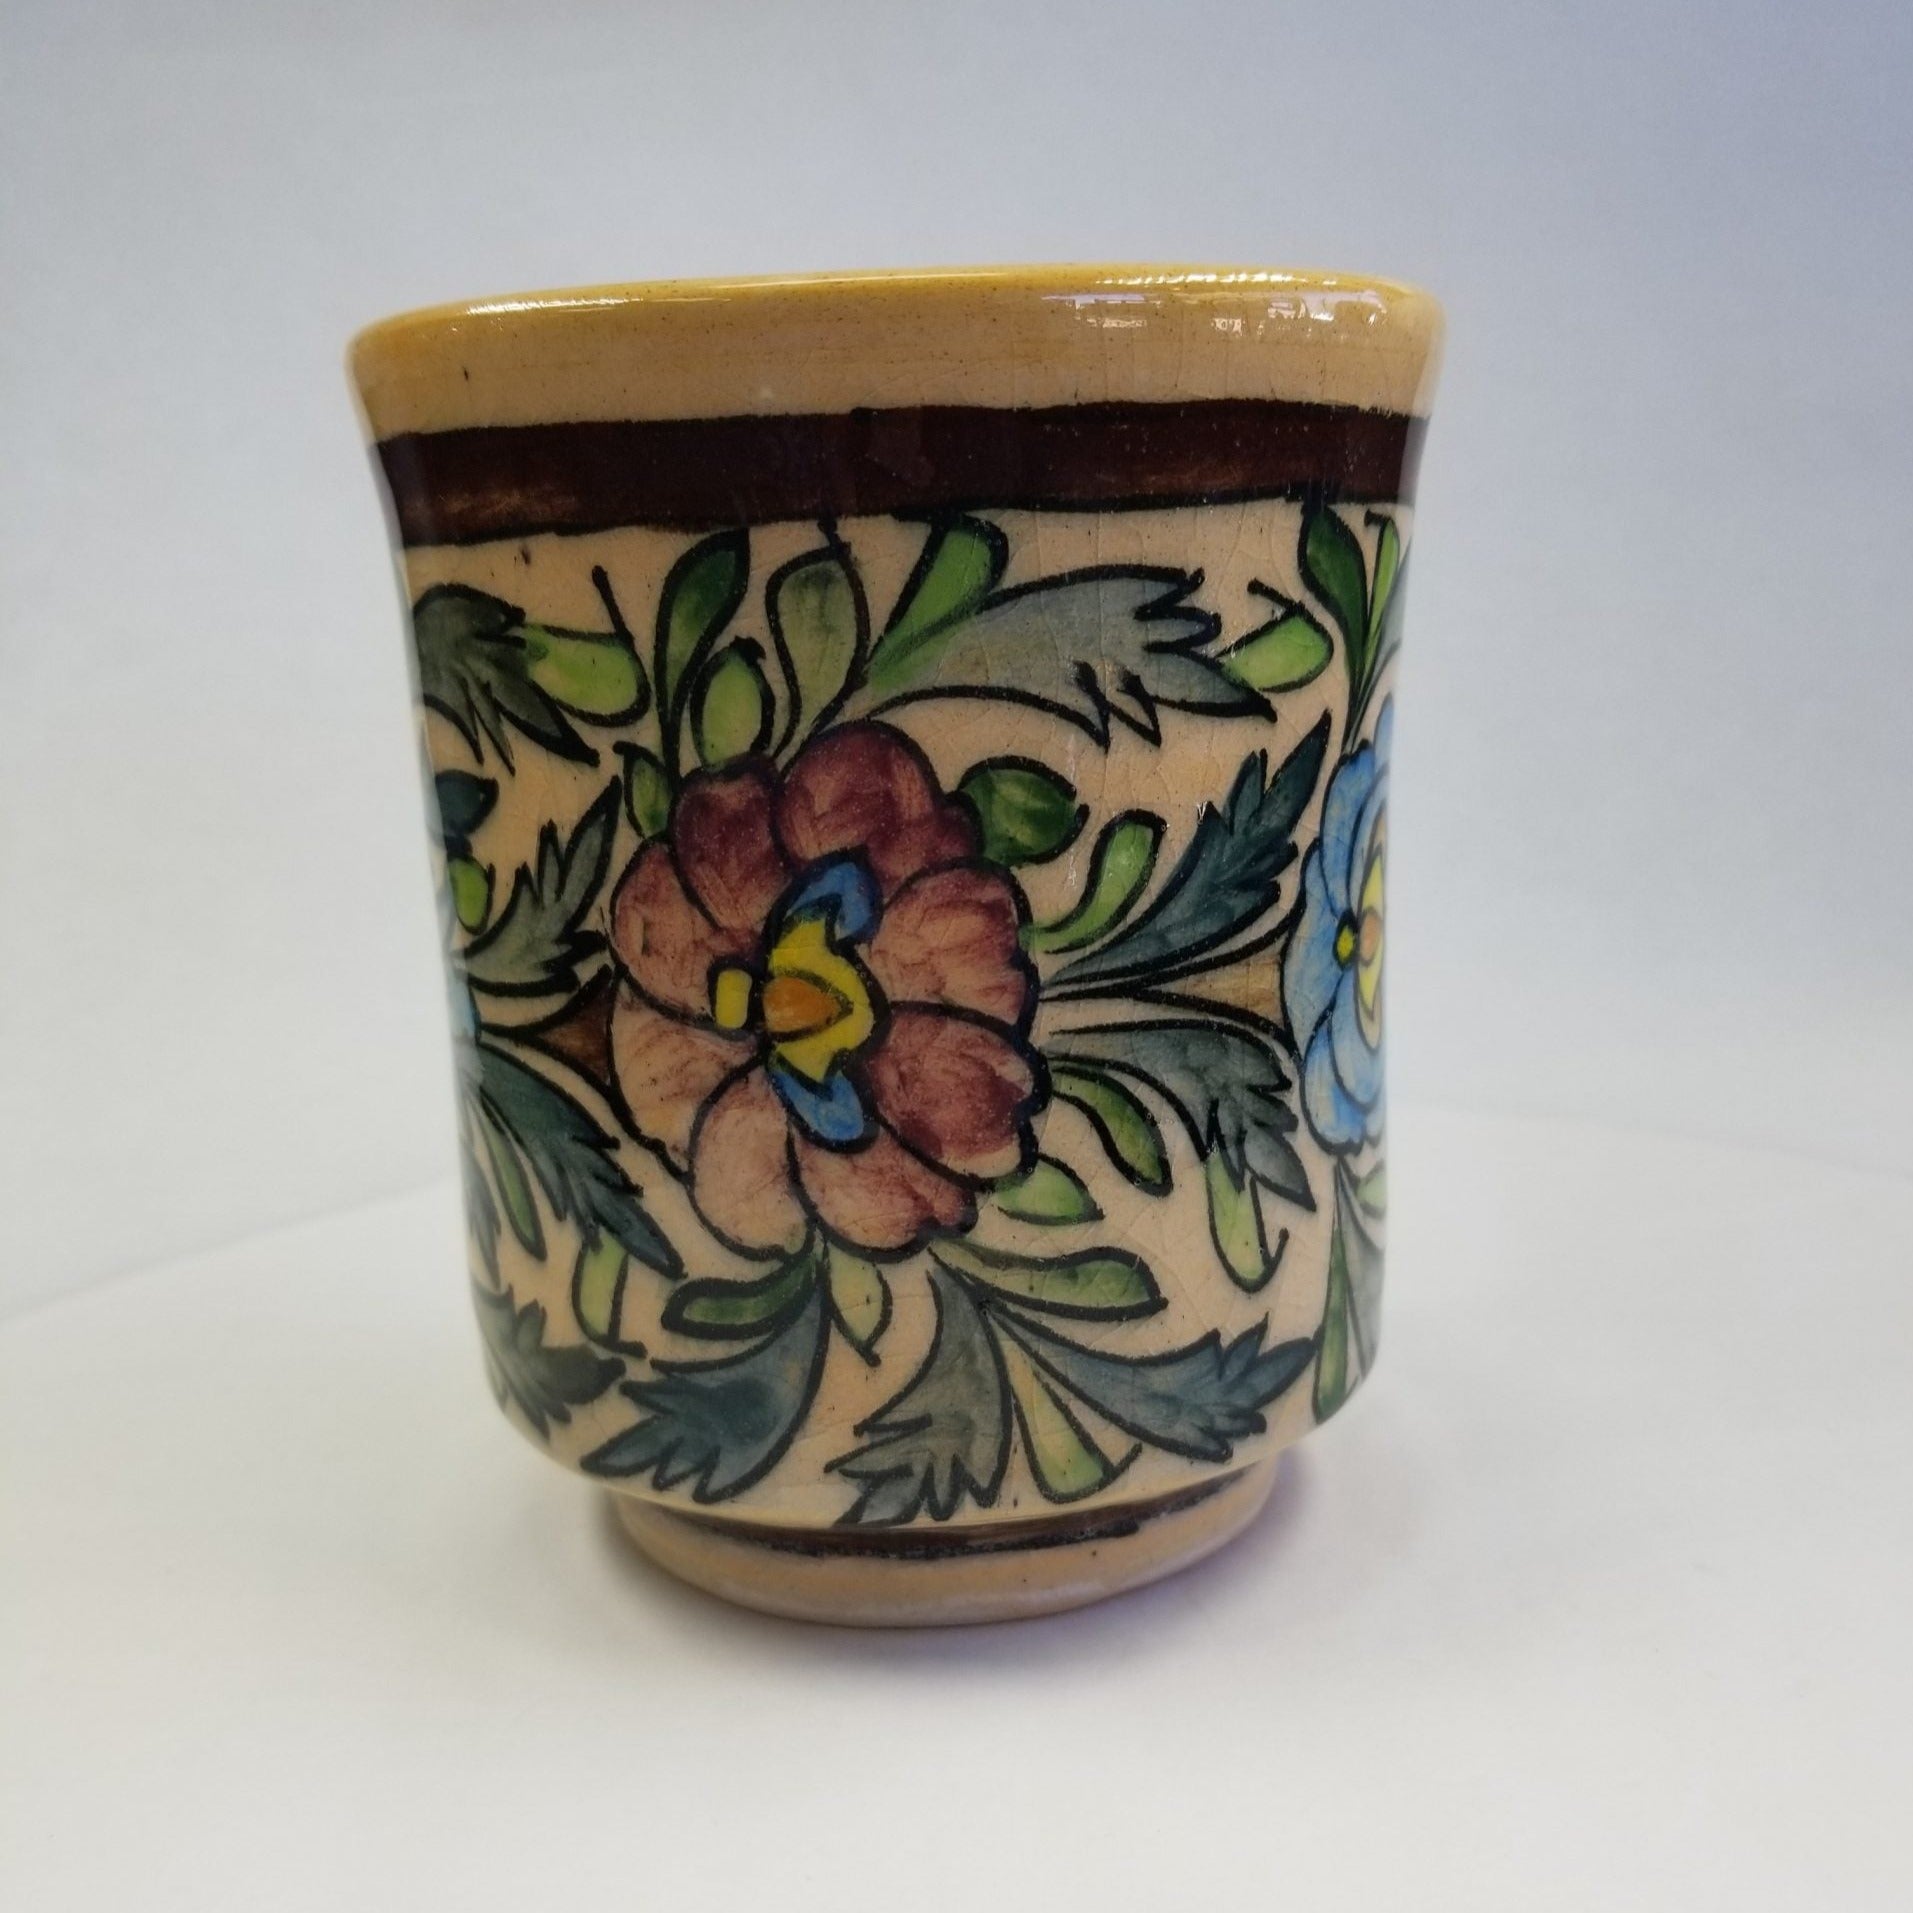 Glazed Colorful Mug Vase - HighTouch 